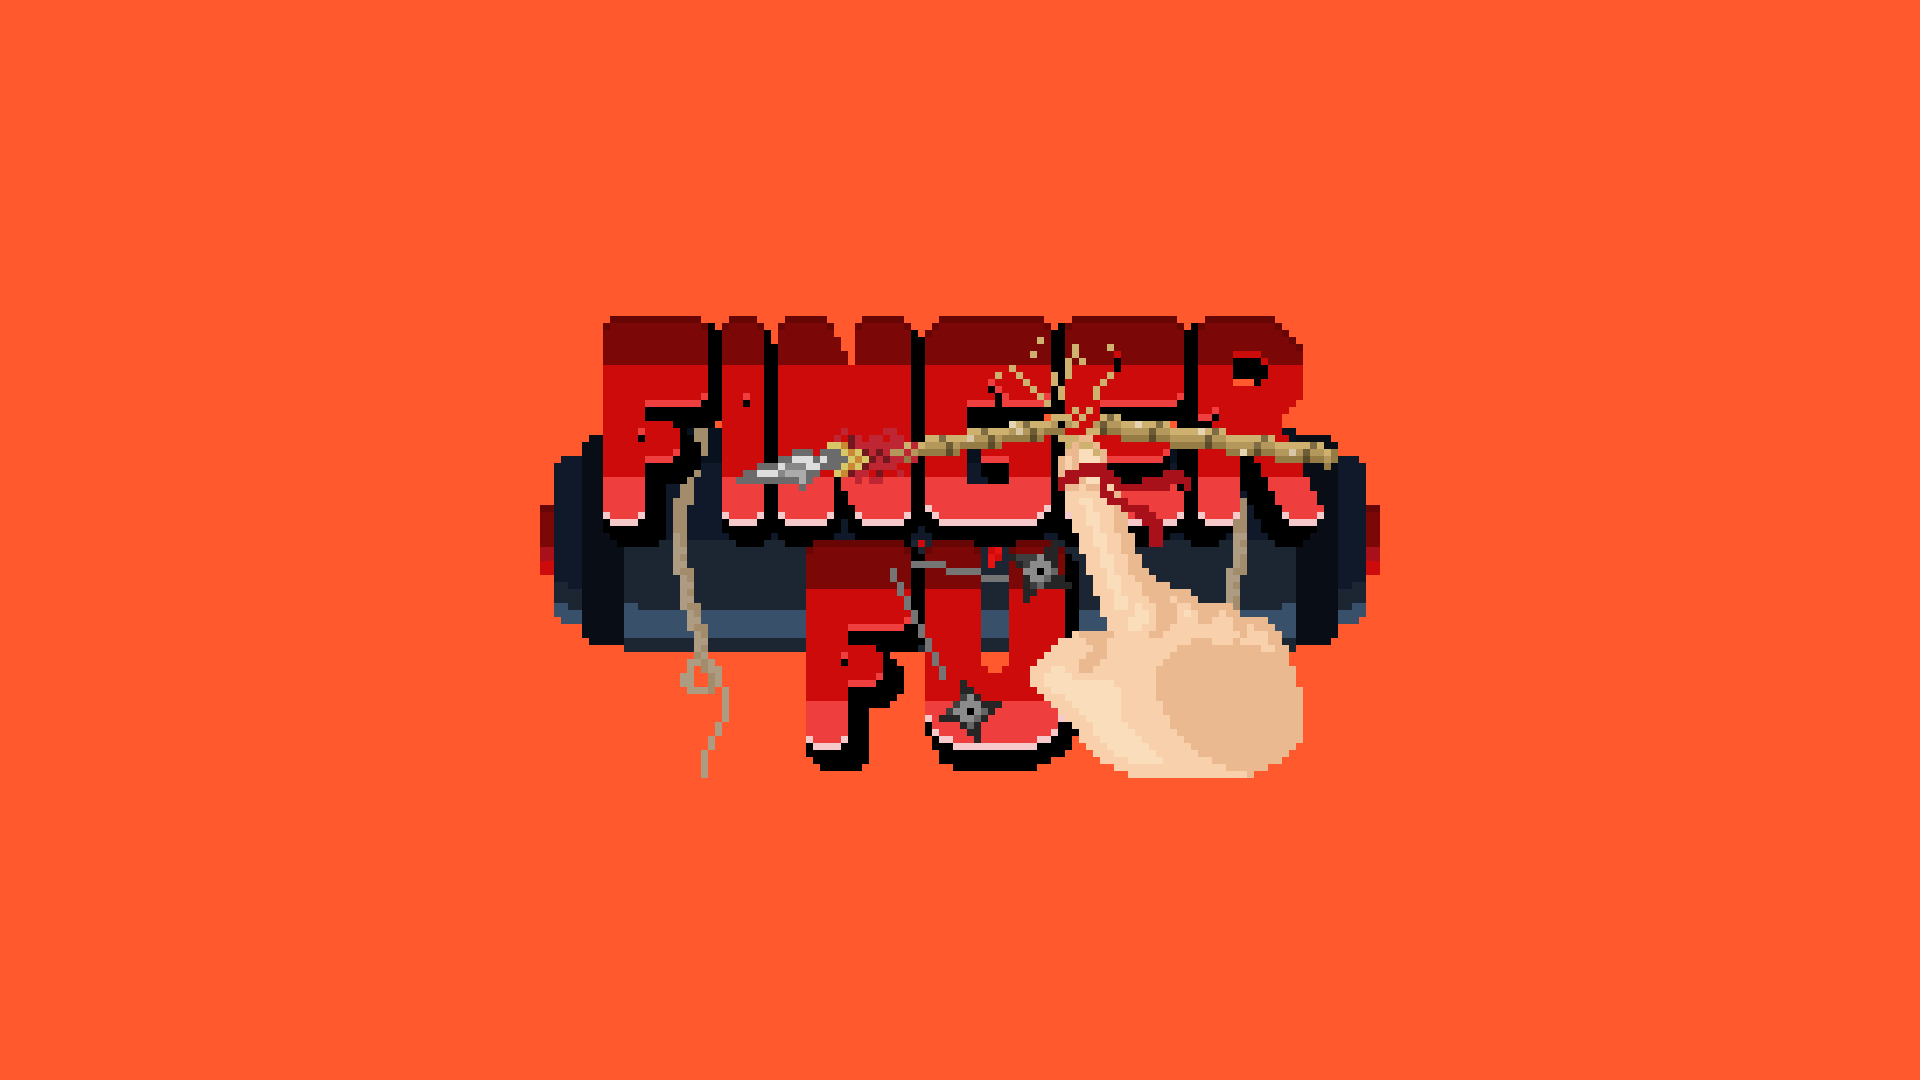 Finger-Fu